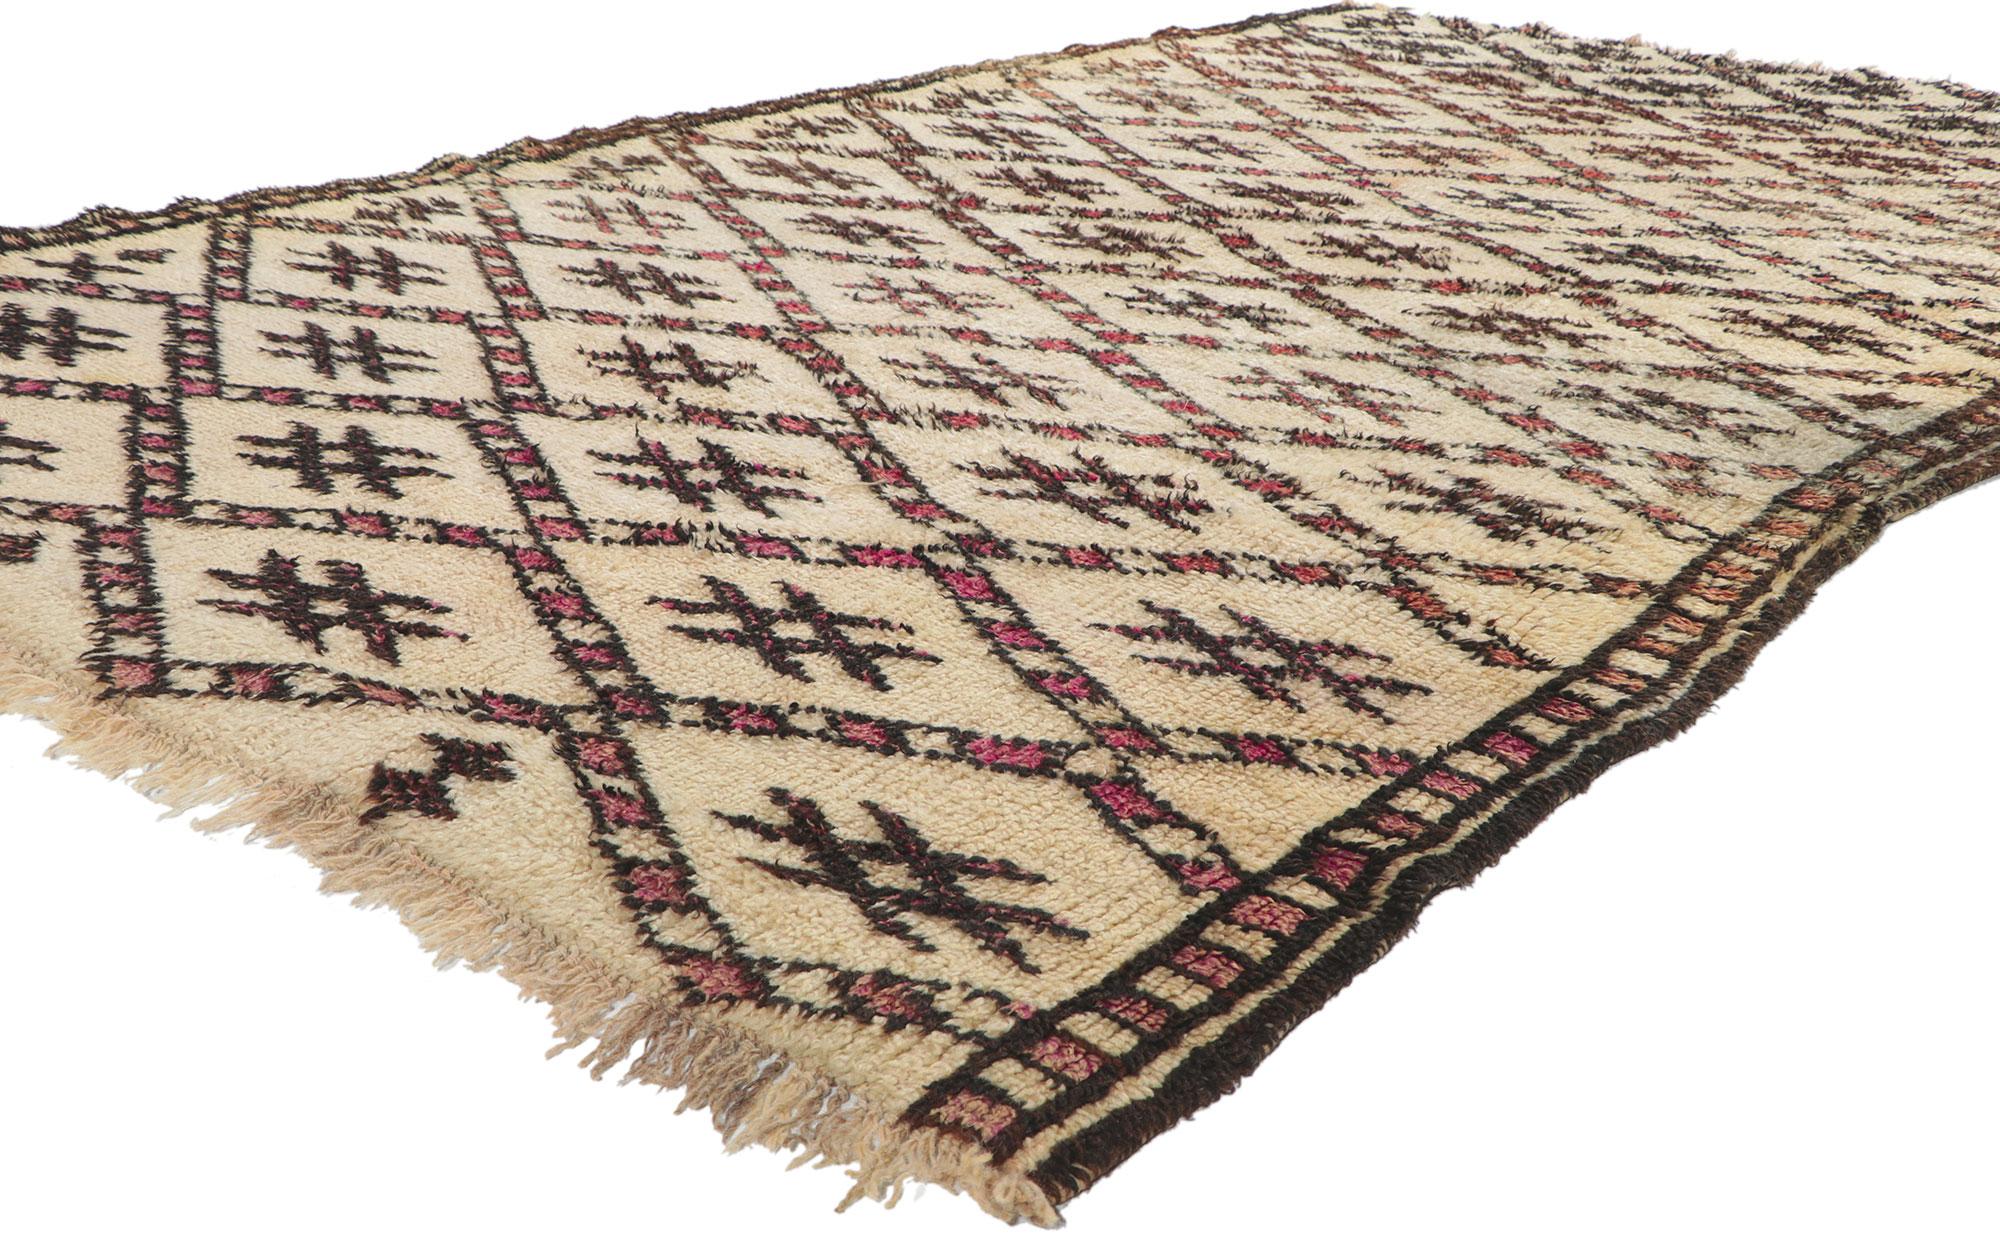 78366 Tapis marocain Vintage Beni Ourain, 06'00 x 10'01. Avec son style moderne du milieu du siècle, ses détails et sa texture incroyables, ce tapis marocain Beni Ourain en laine nouée à la main est une vision captivante de la beauté tissée. Le